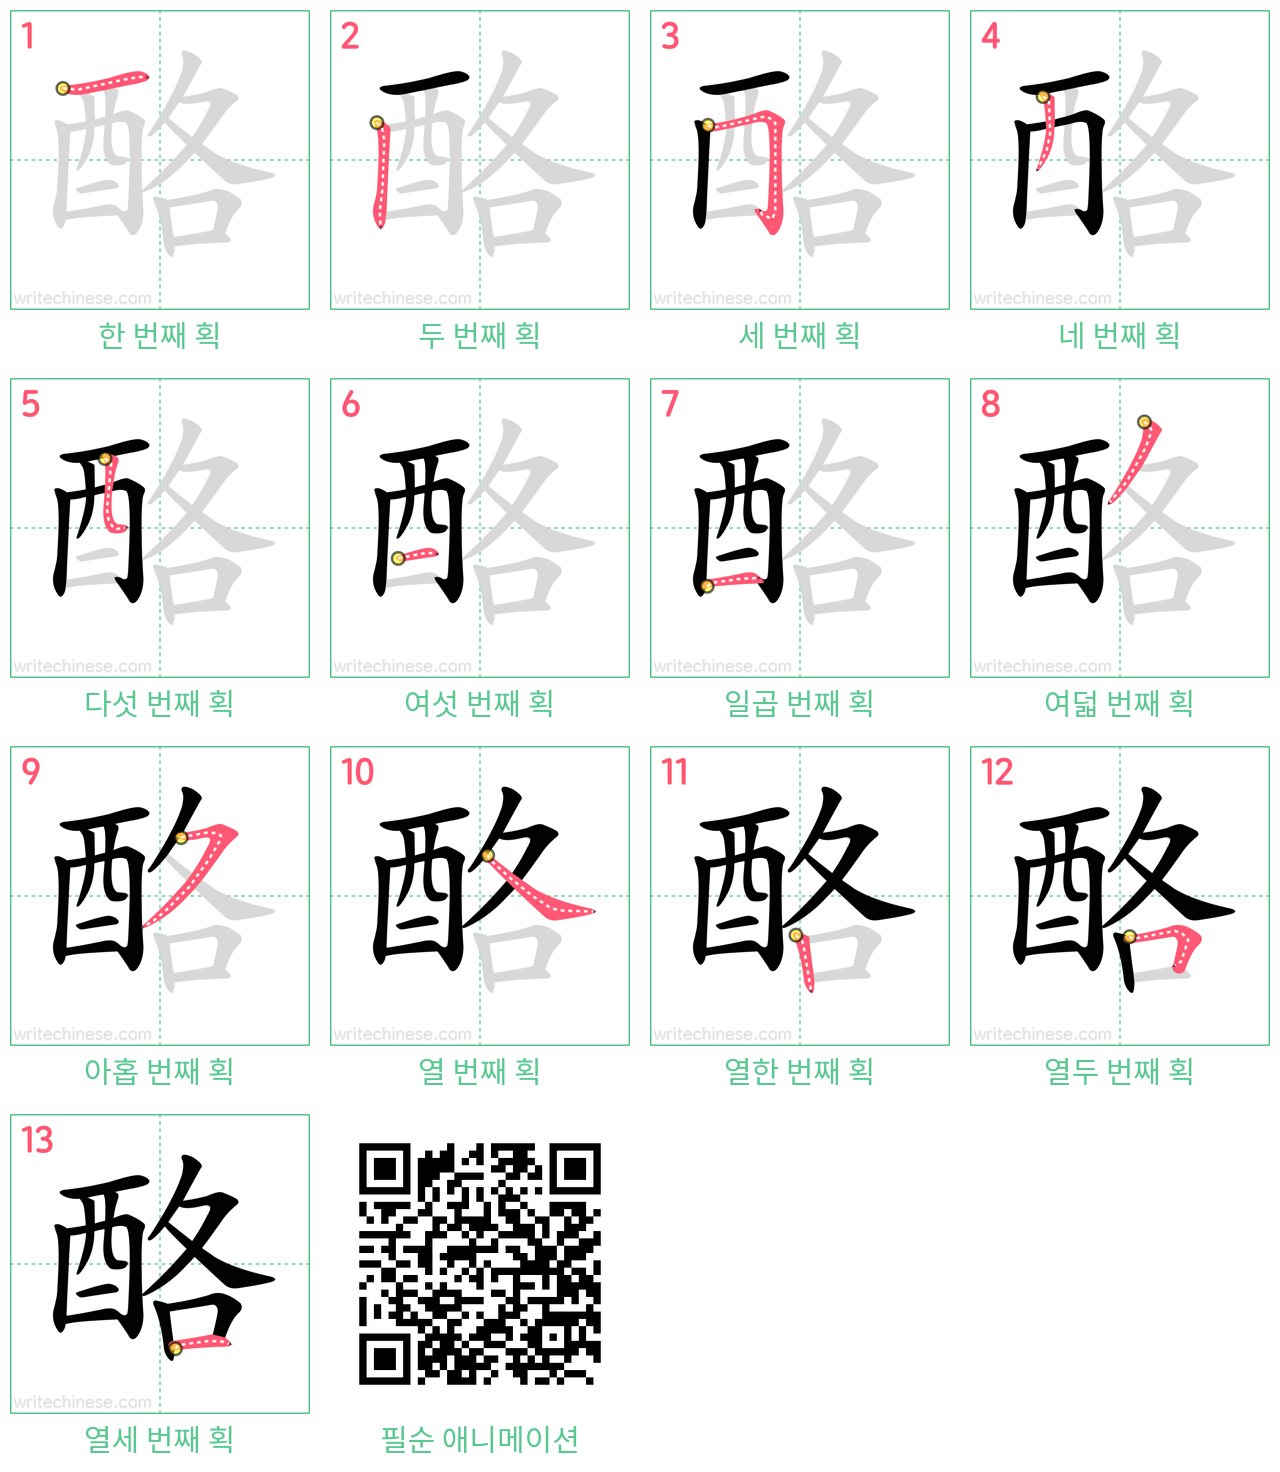 酪 step-by-step stroke order diagrams